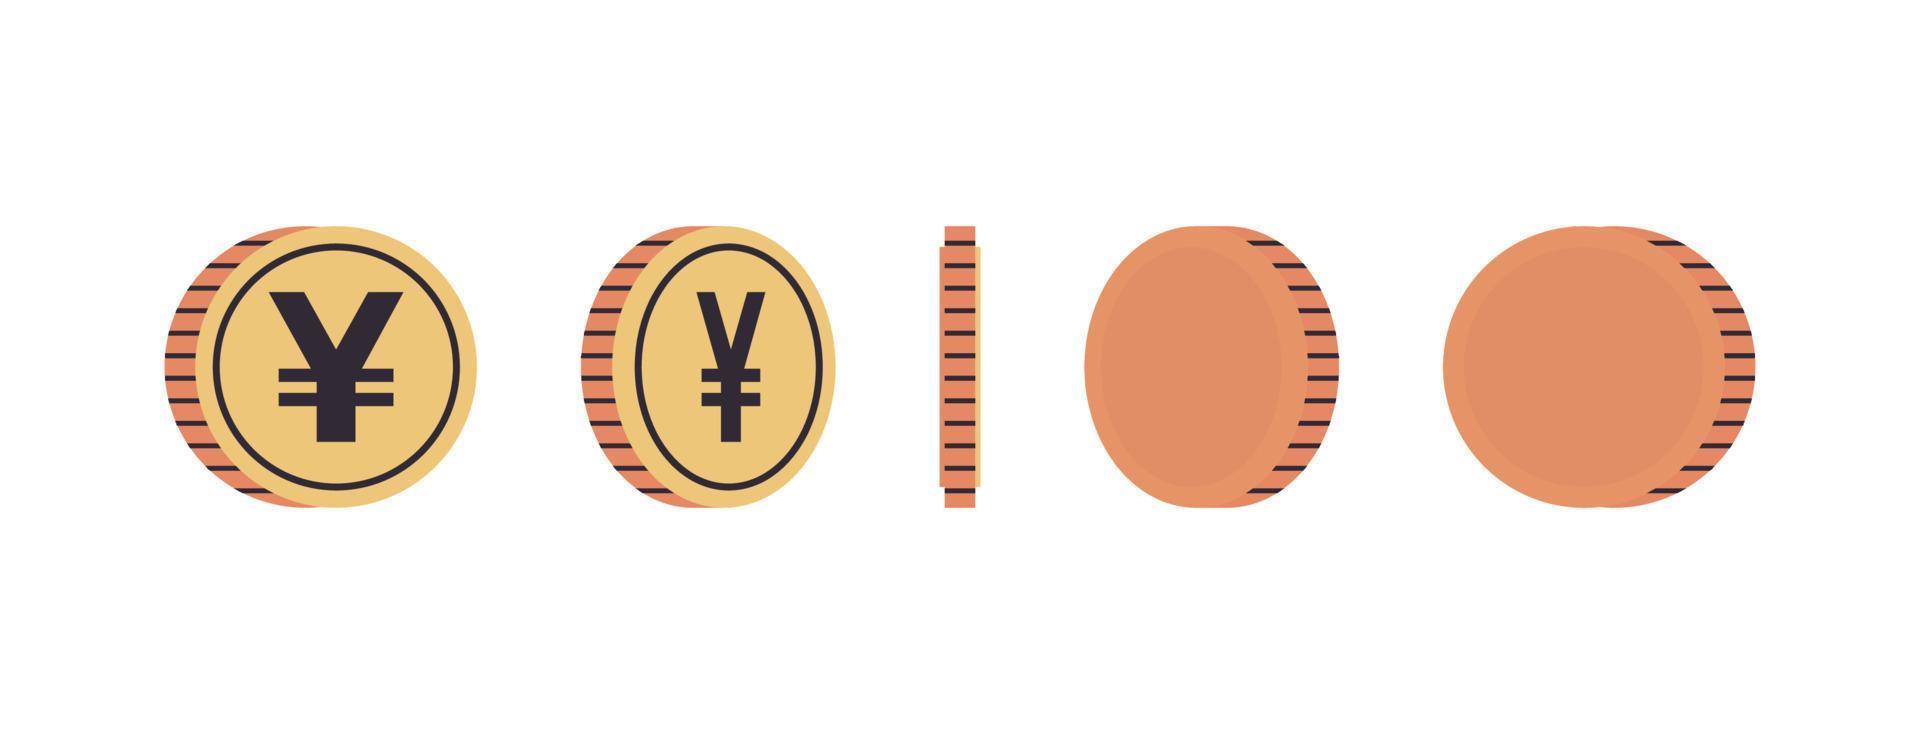 moedas de moeda internacional e moedas de ouro em diferentes ângulos de ilustração vetorial plana de comprimento total do conceito de rotação. vetor